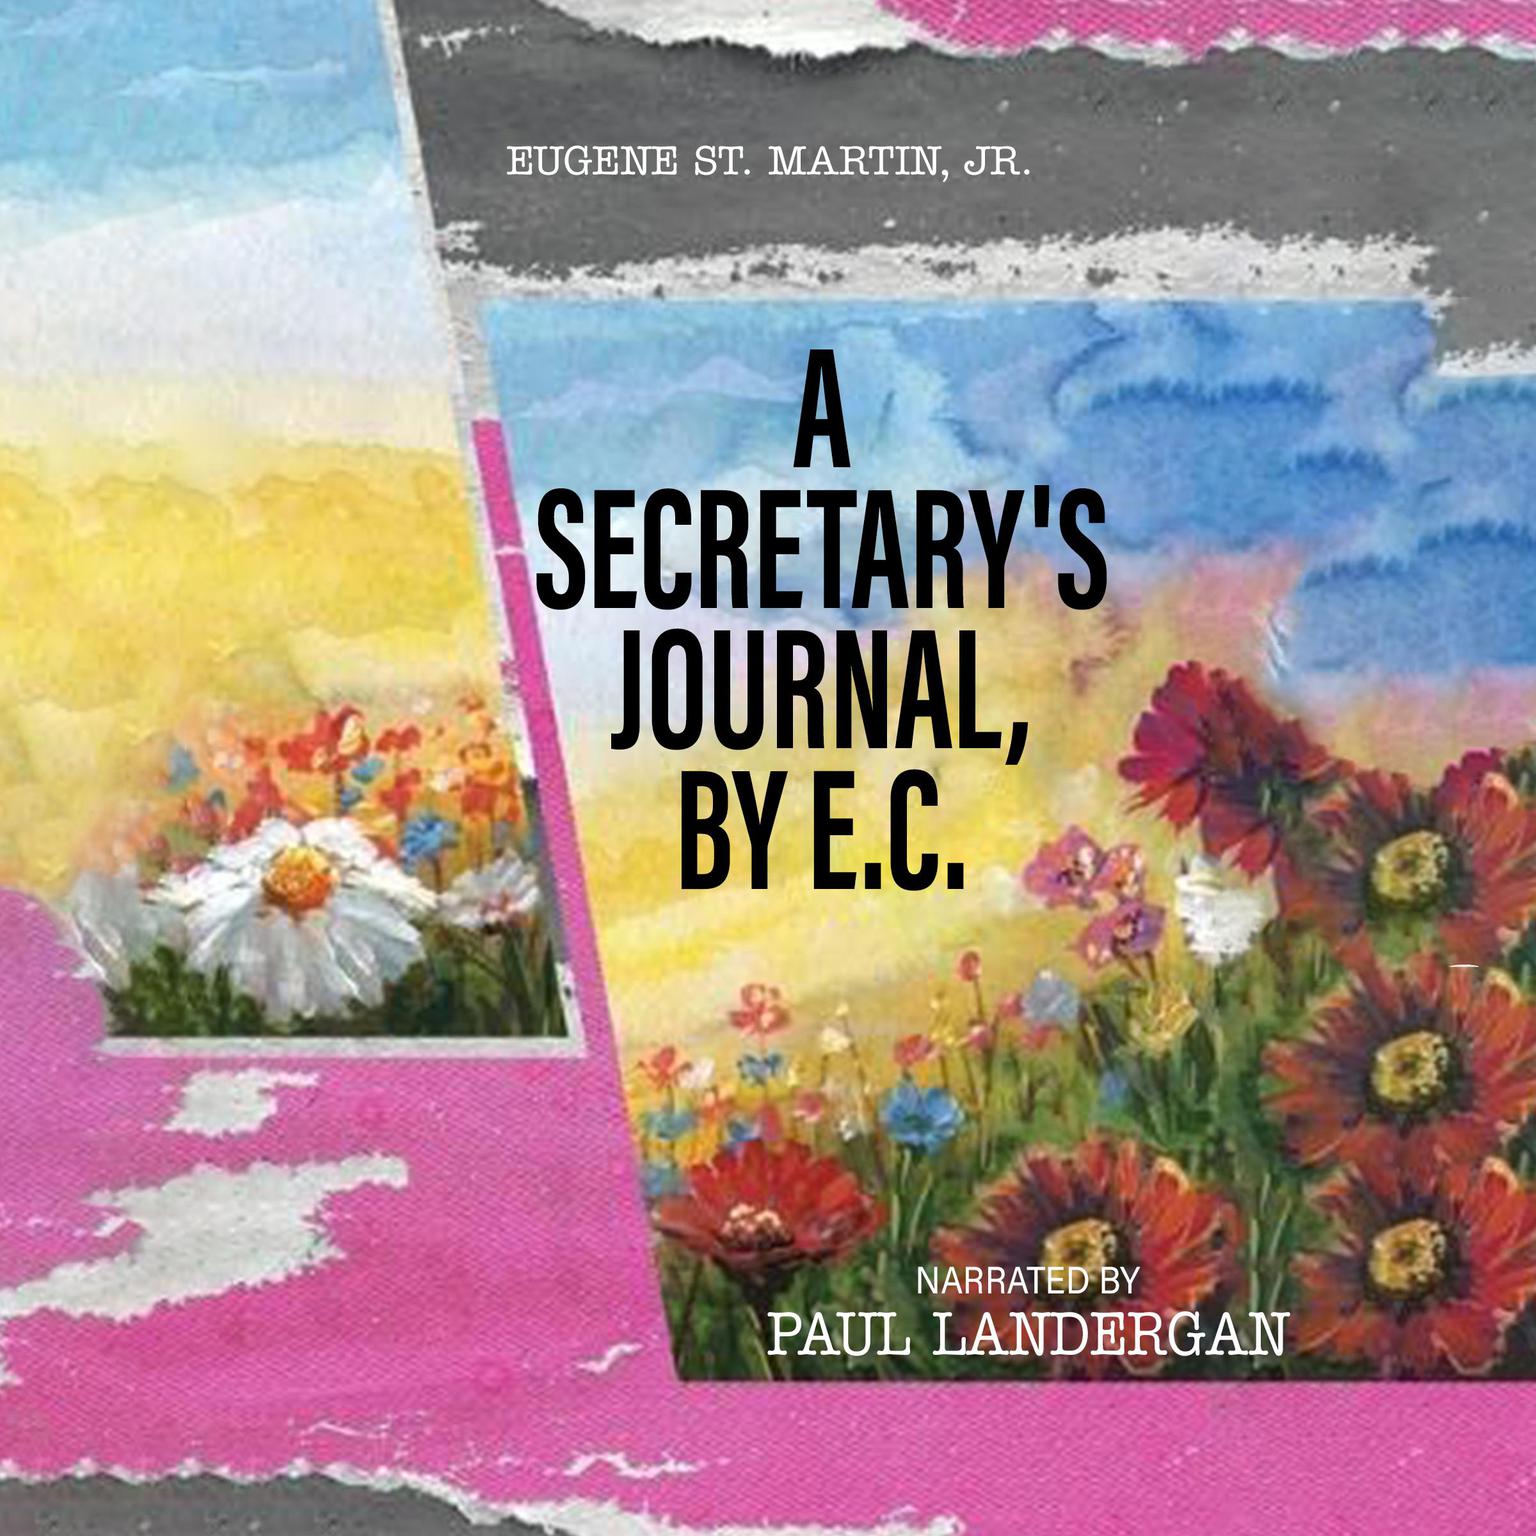 A Secretarys Journal, by E. C. Audiobook, by Eugene St. Martin JR.